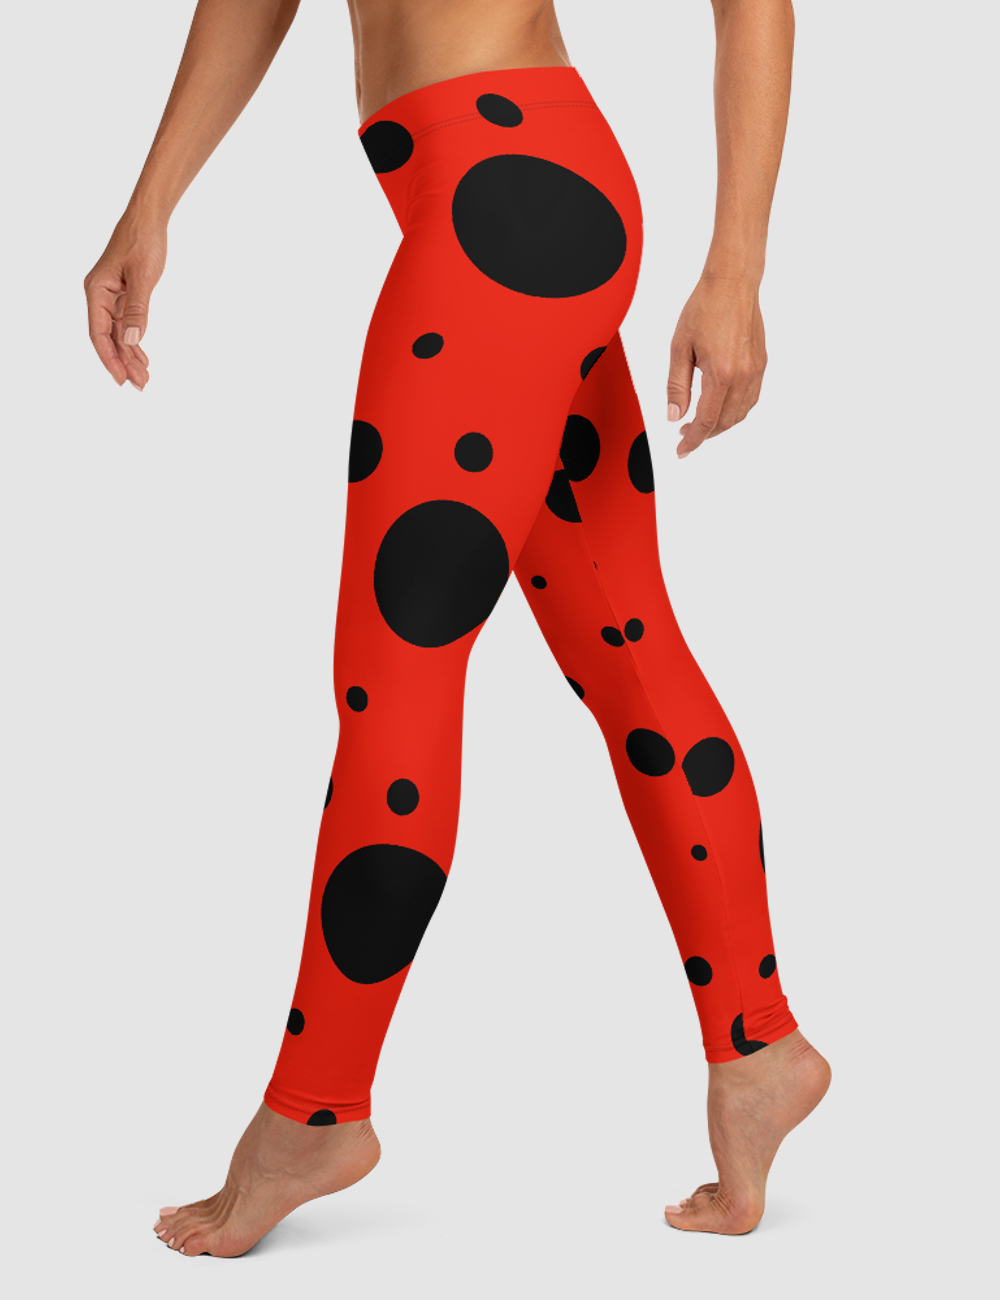 Classic Ladybug | Women's Standard Yoga Leggings OniTakai